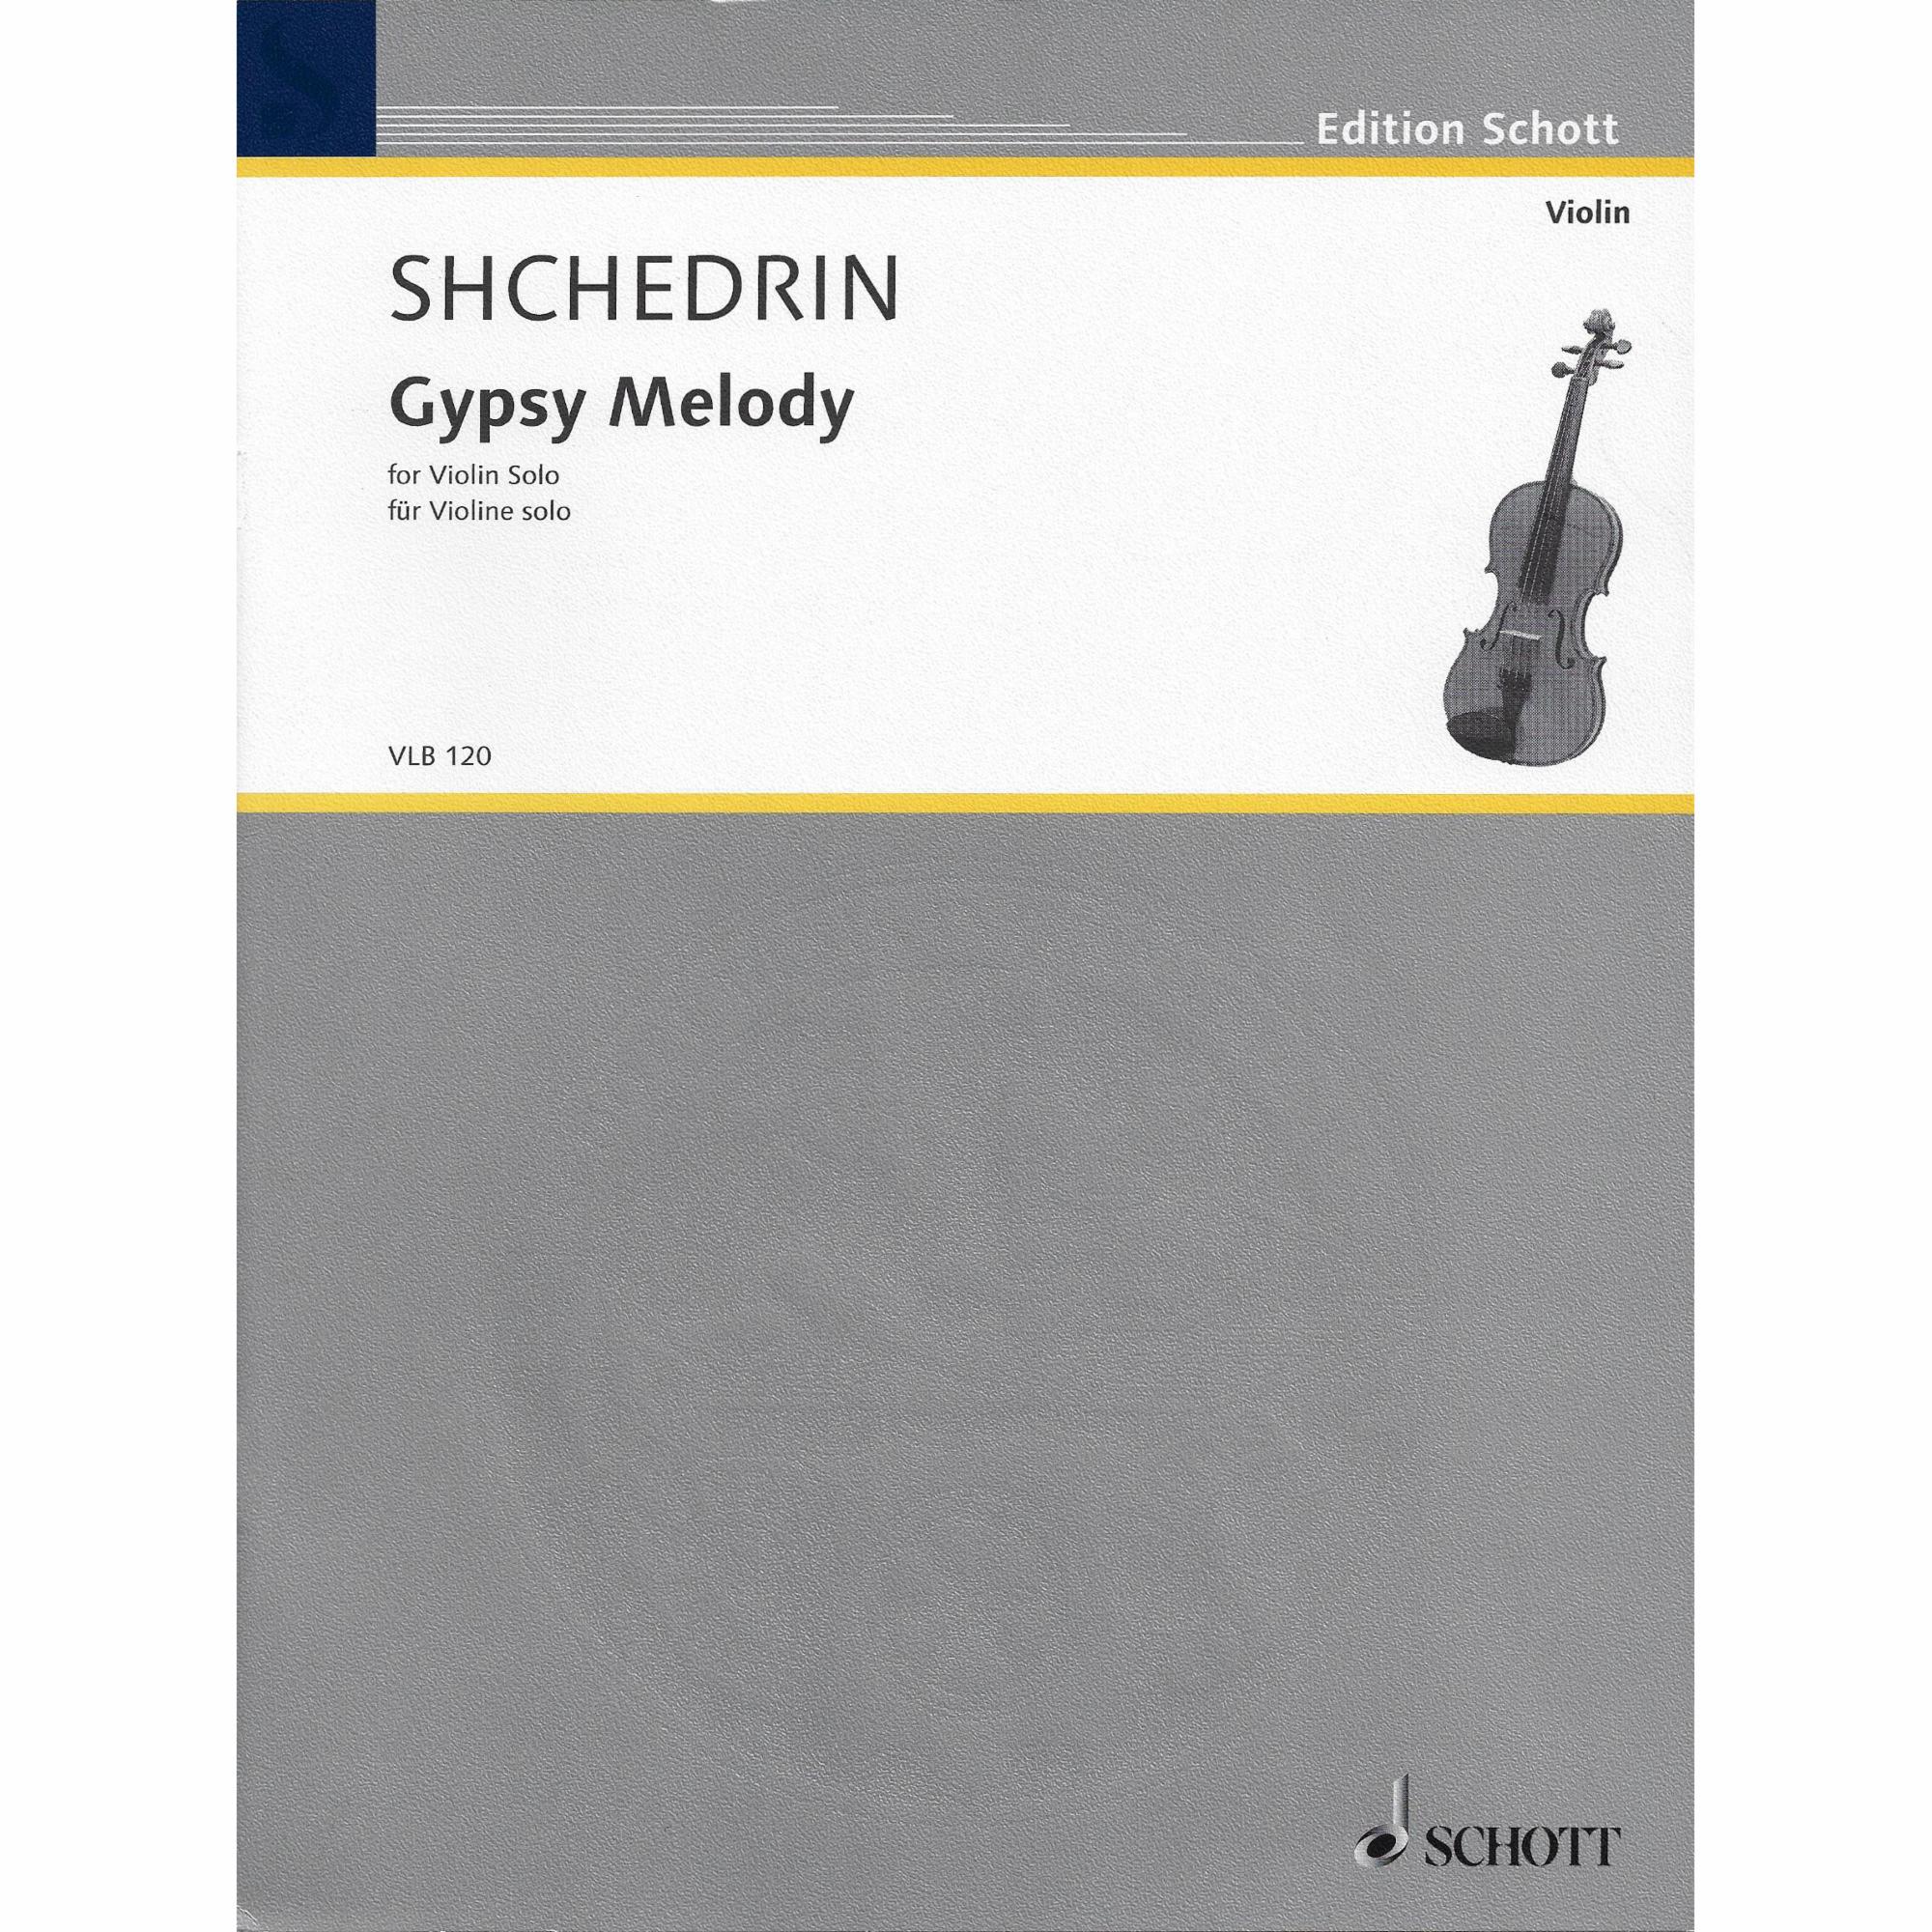 Shchedrin -- Gypsy Melody for Solo Violin